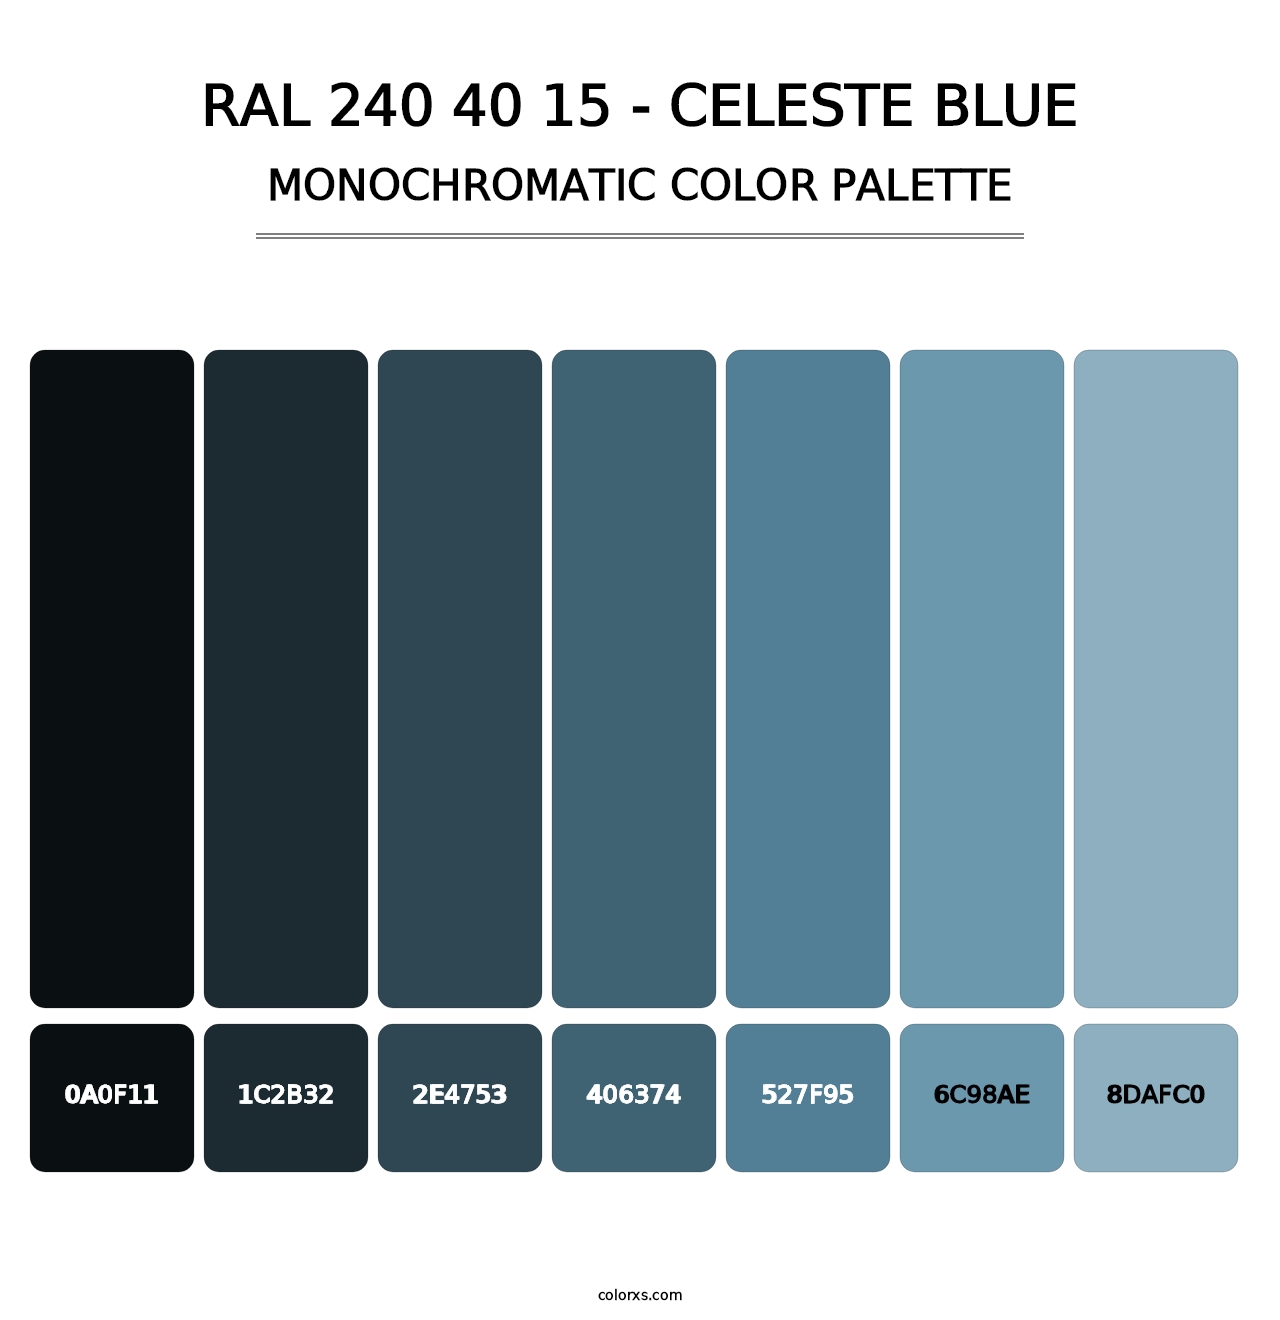 RAL 240 40 15 - Celeste Blue - Monochromatic Color Palette